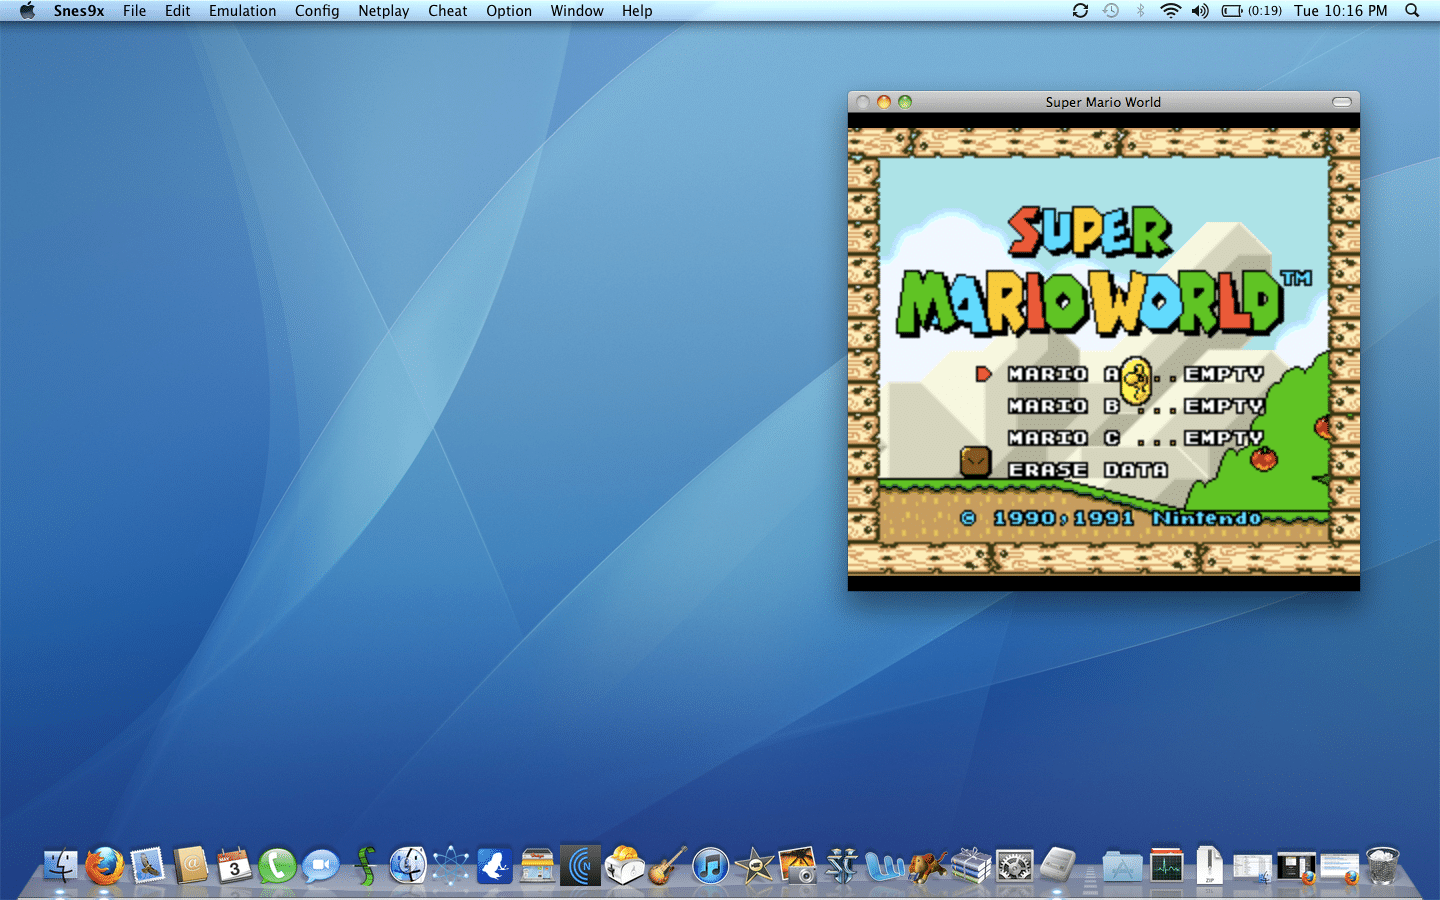 emulator enhancer free mac